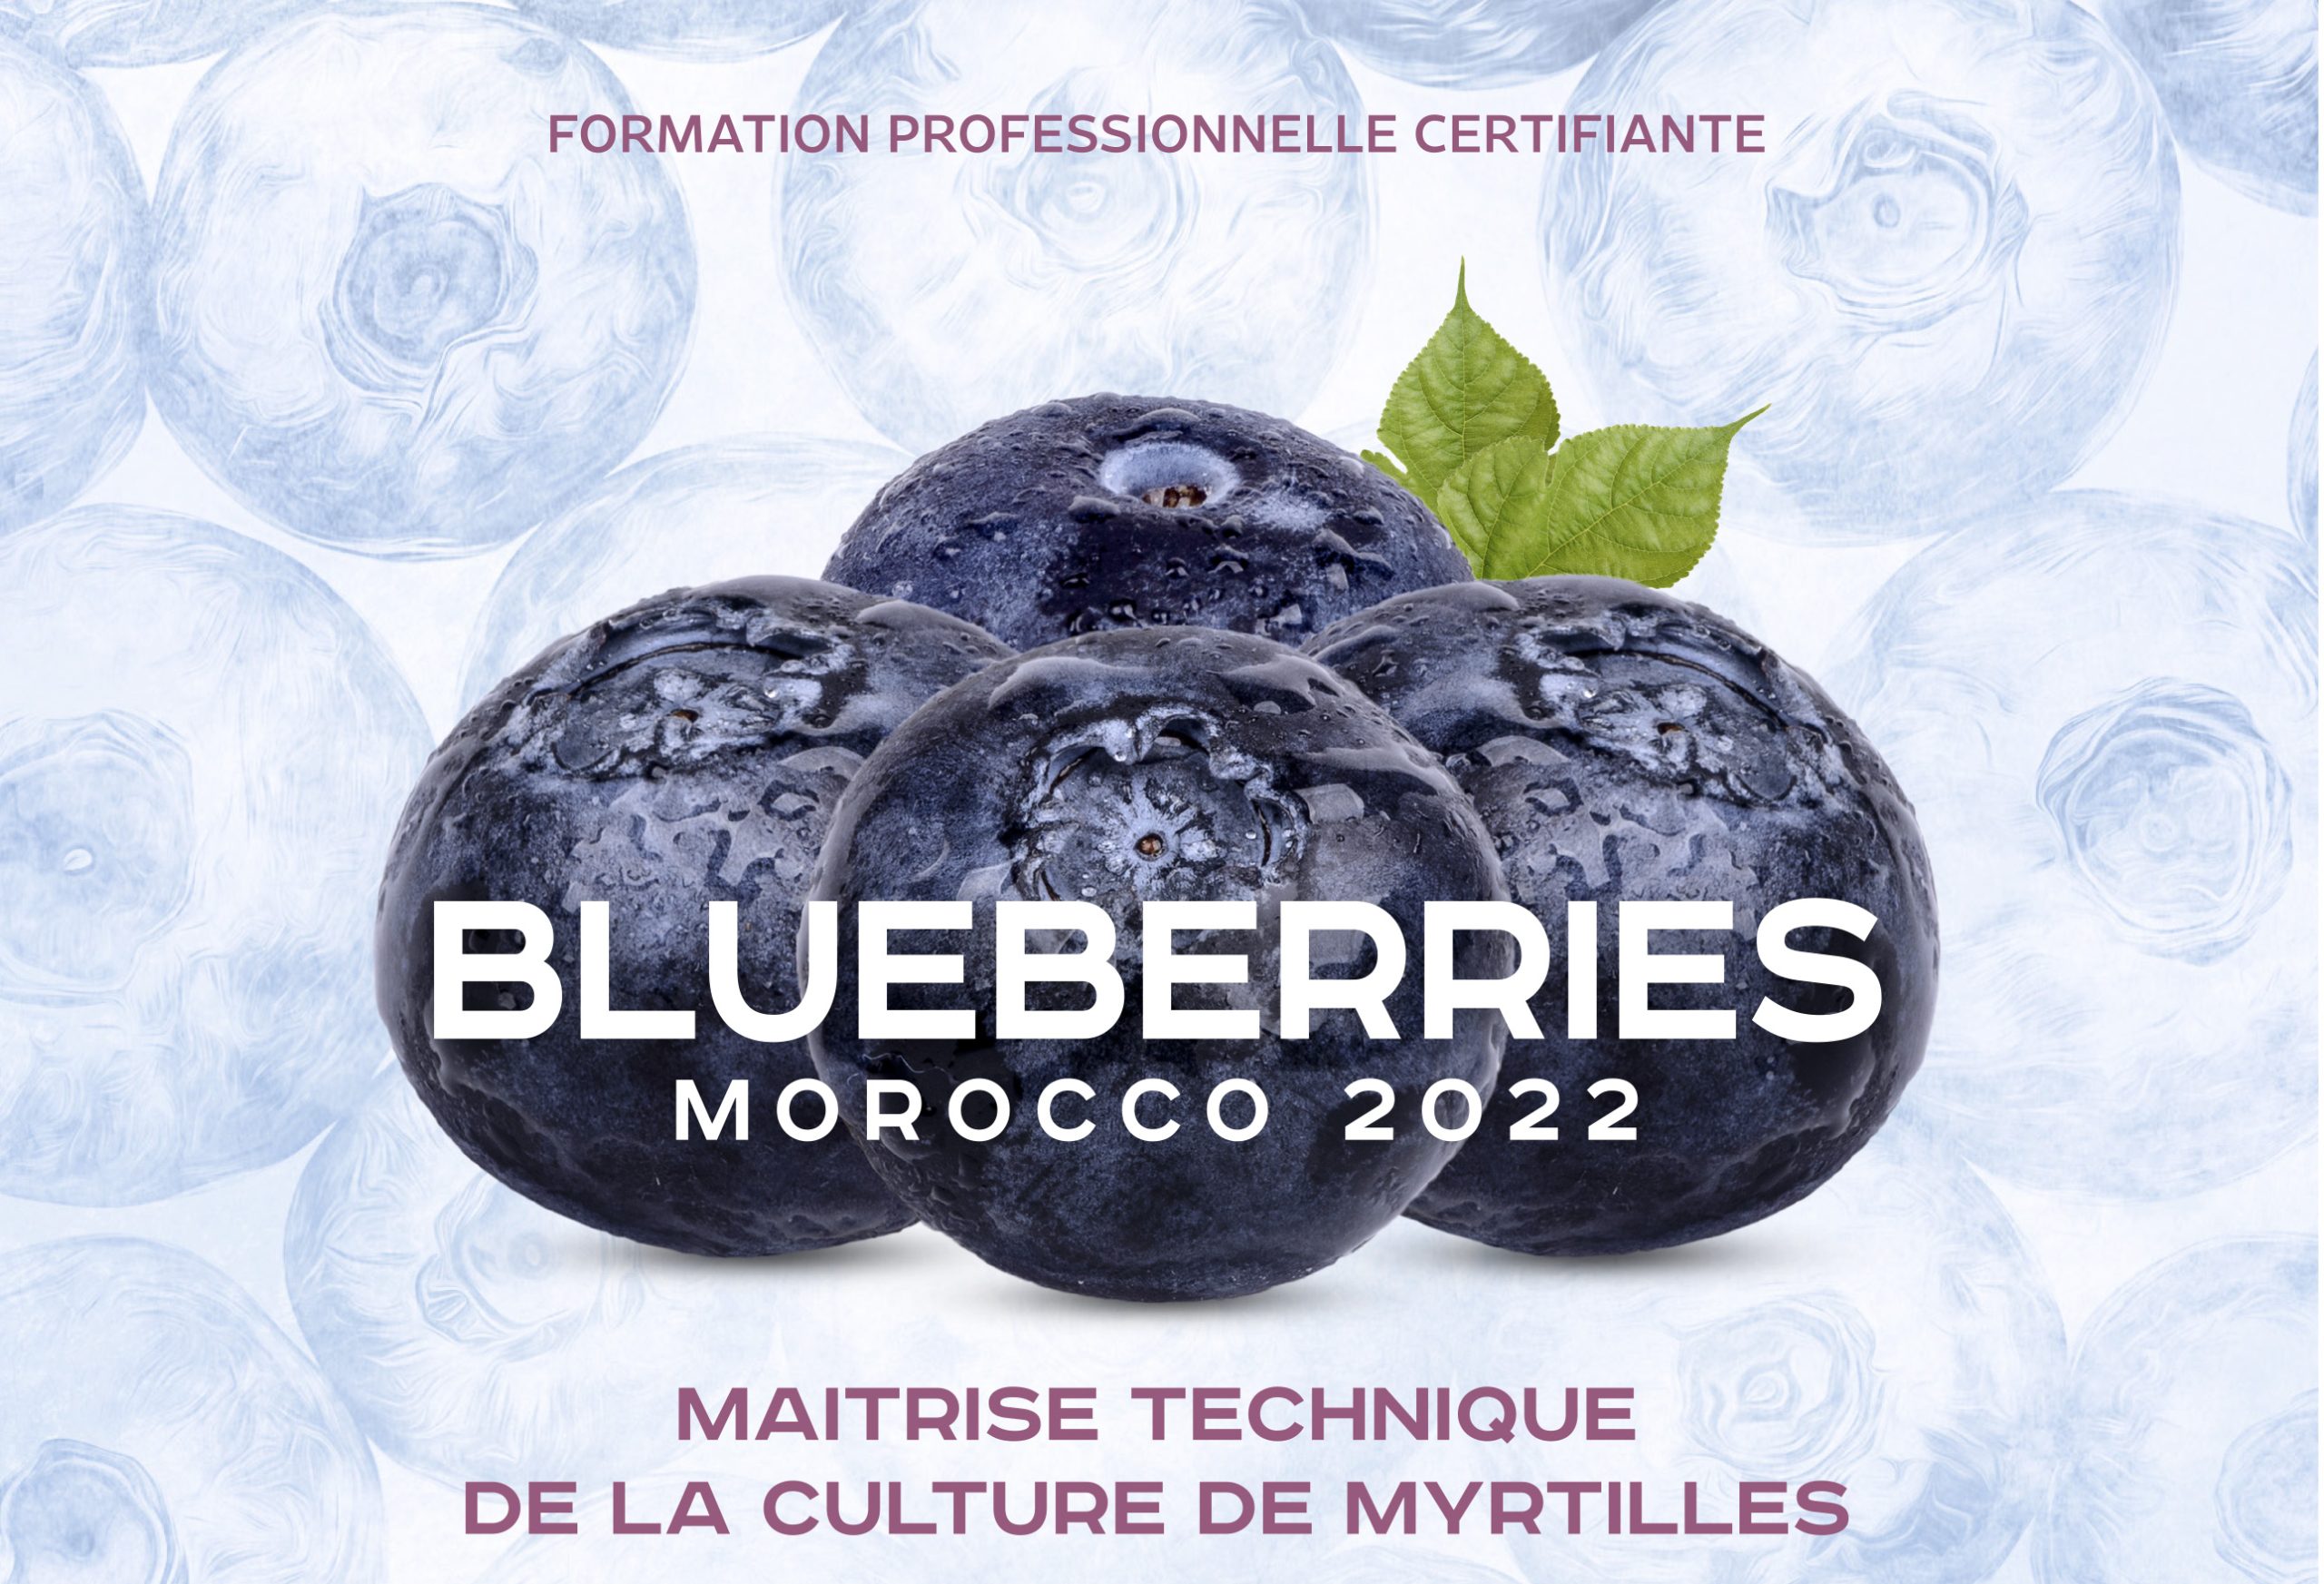 Blueberries Morocco 2022 I Maitrise technique de la culture de myrtille